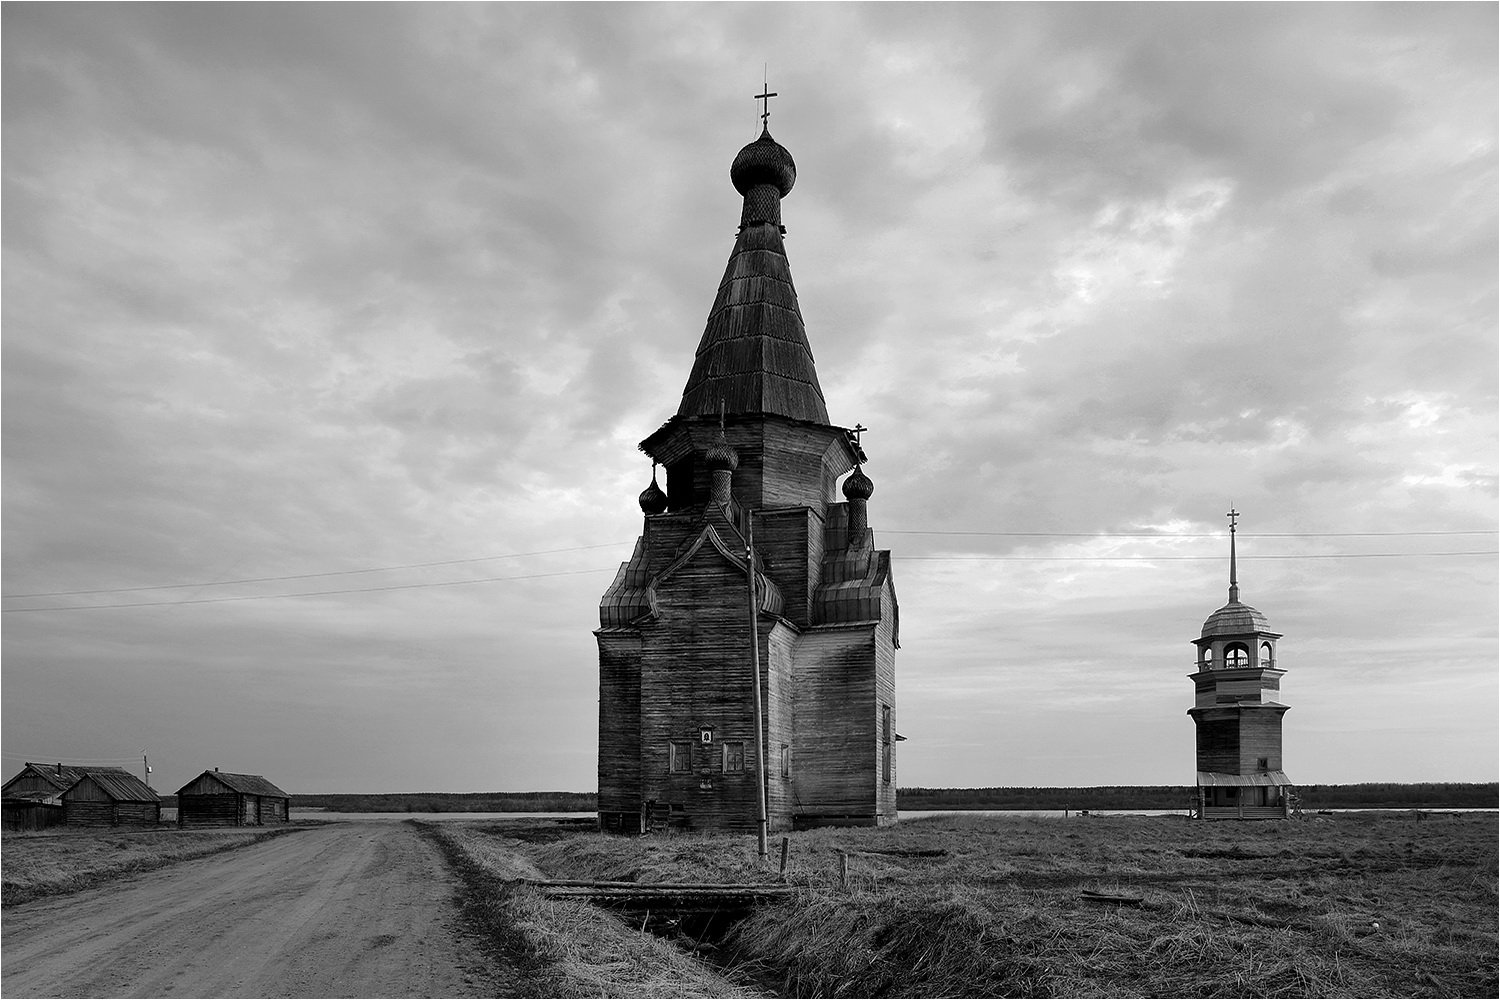 ч\б, север, онега, деревянная архитектура, храм,, Victor Pechenev